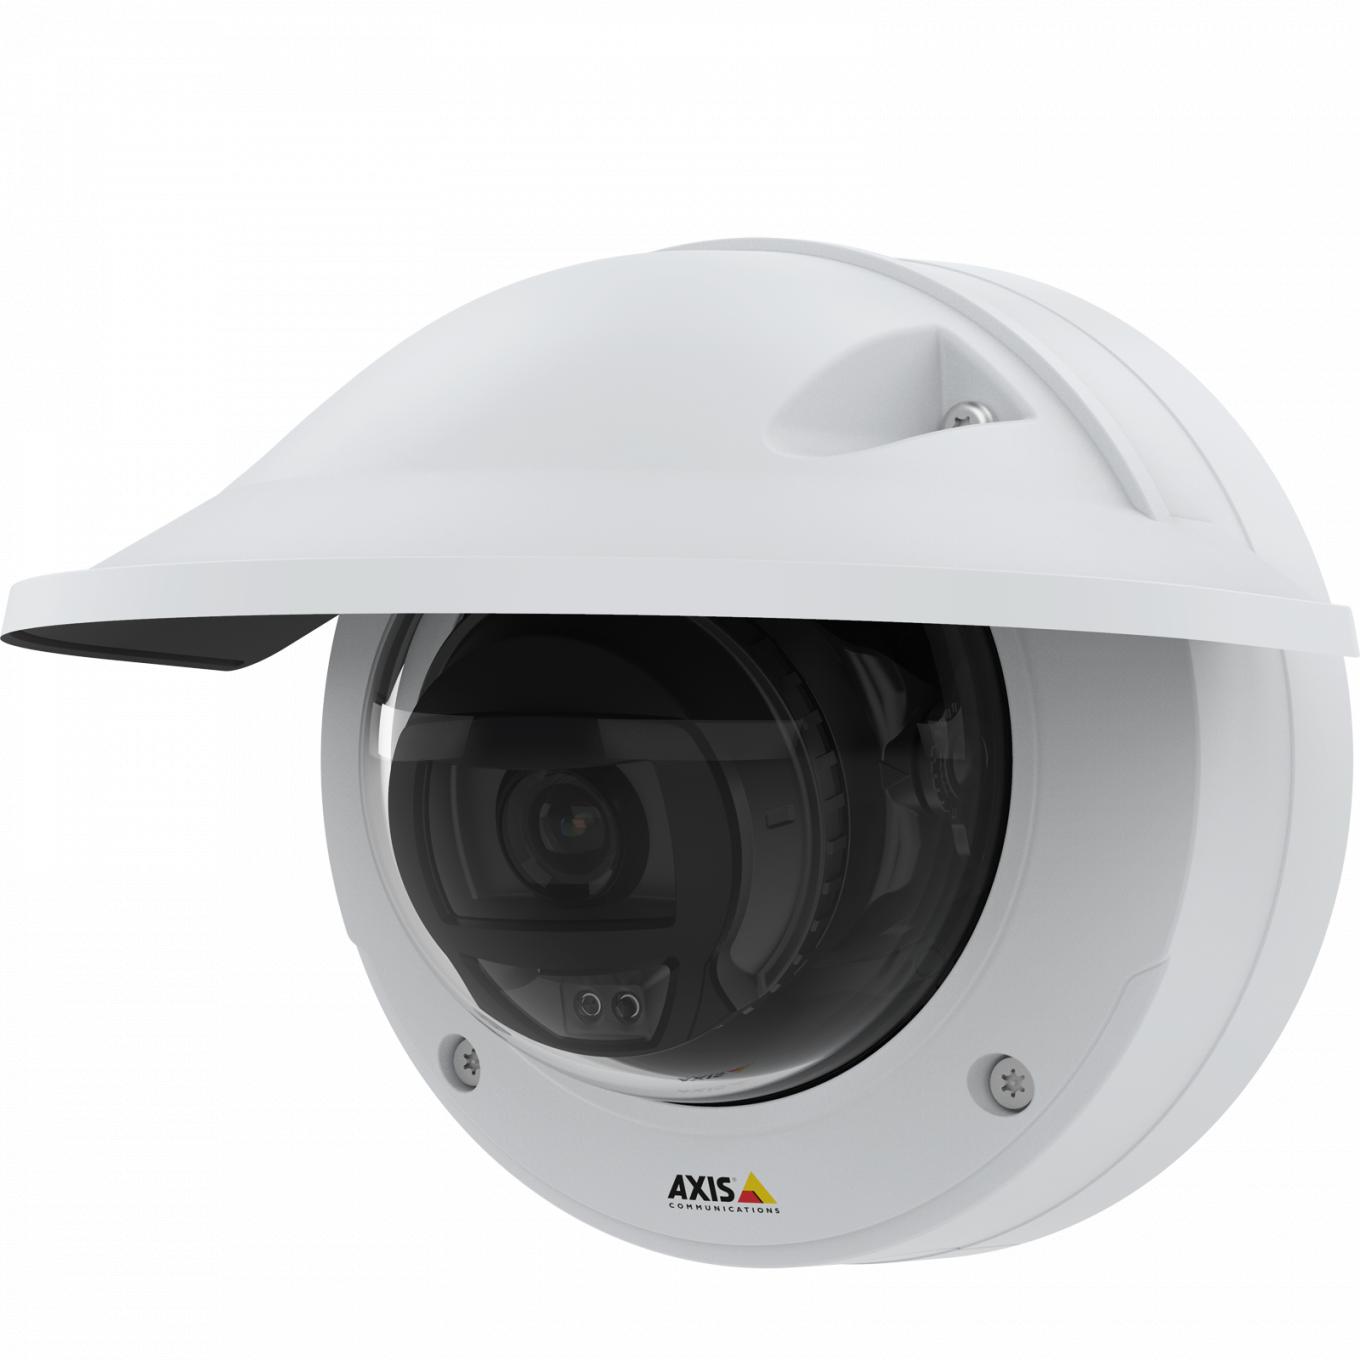 La cámara IP Camera AXIS P3245 lve ofrece la calidad de vídeo HDTV 1080p. Vista de la cámara desde su izquierda y con parasol.